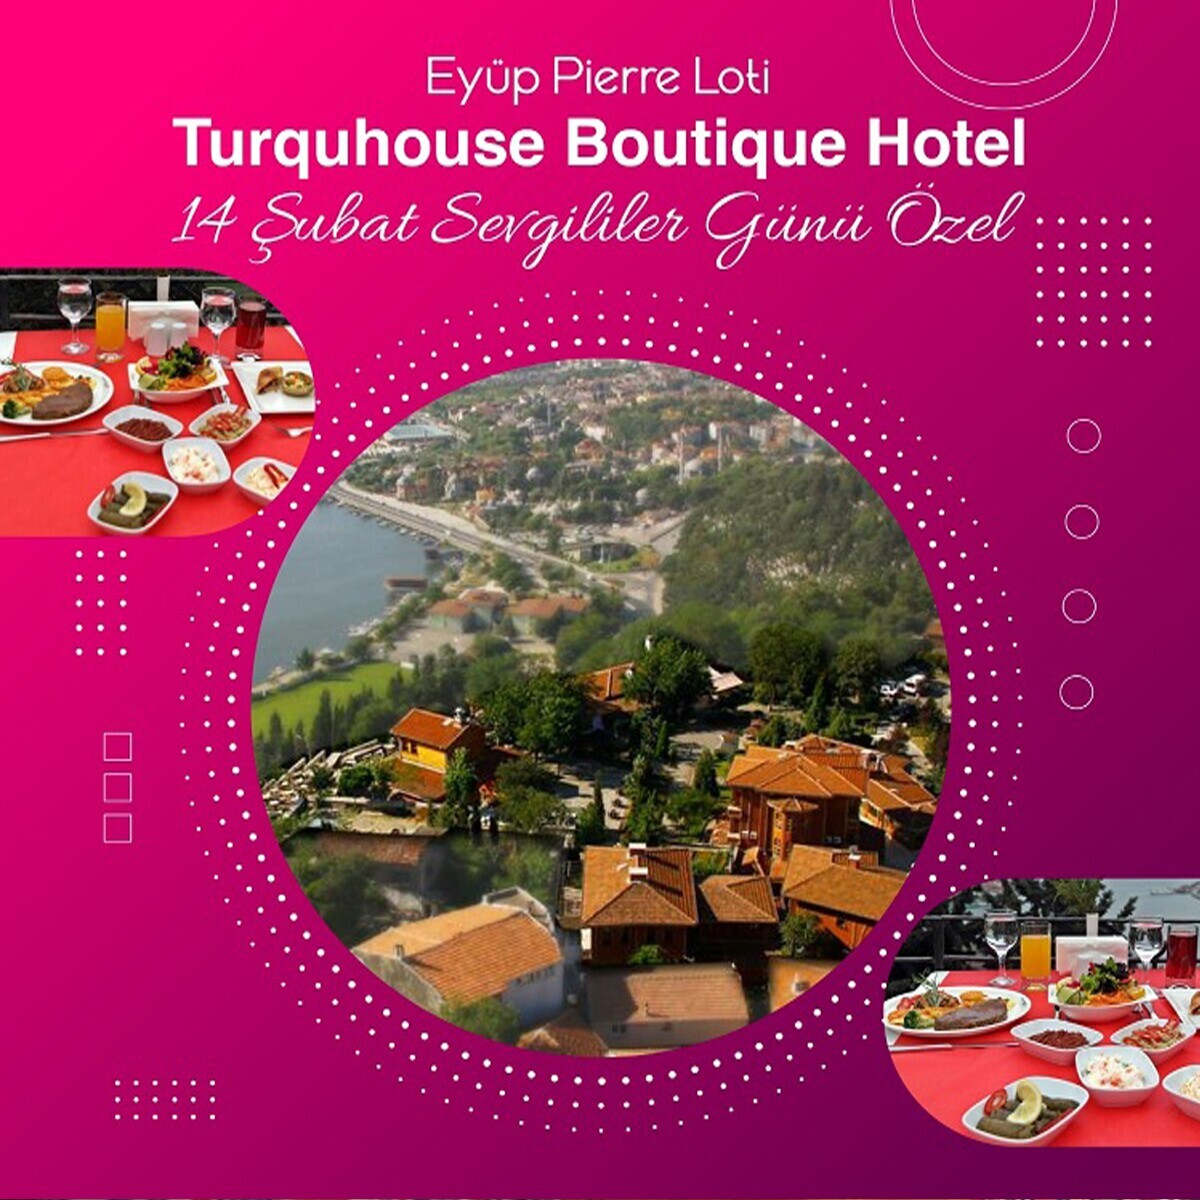 Eyüp Pierre Lotti Tepesi Turquhouse Boutique Hotel’de 14 Şubat Sevgililer Günü’ne Özel Akşam Yemeği ve Konaklama Paketleri